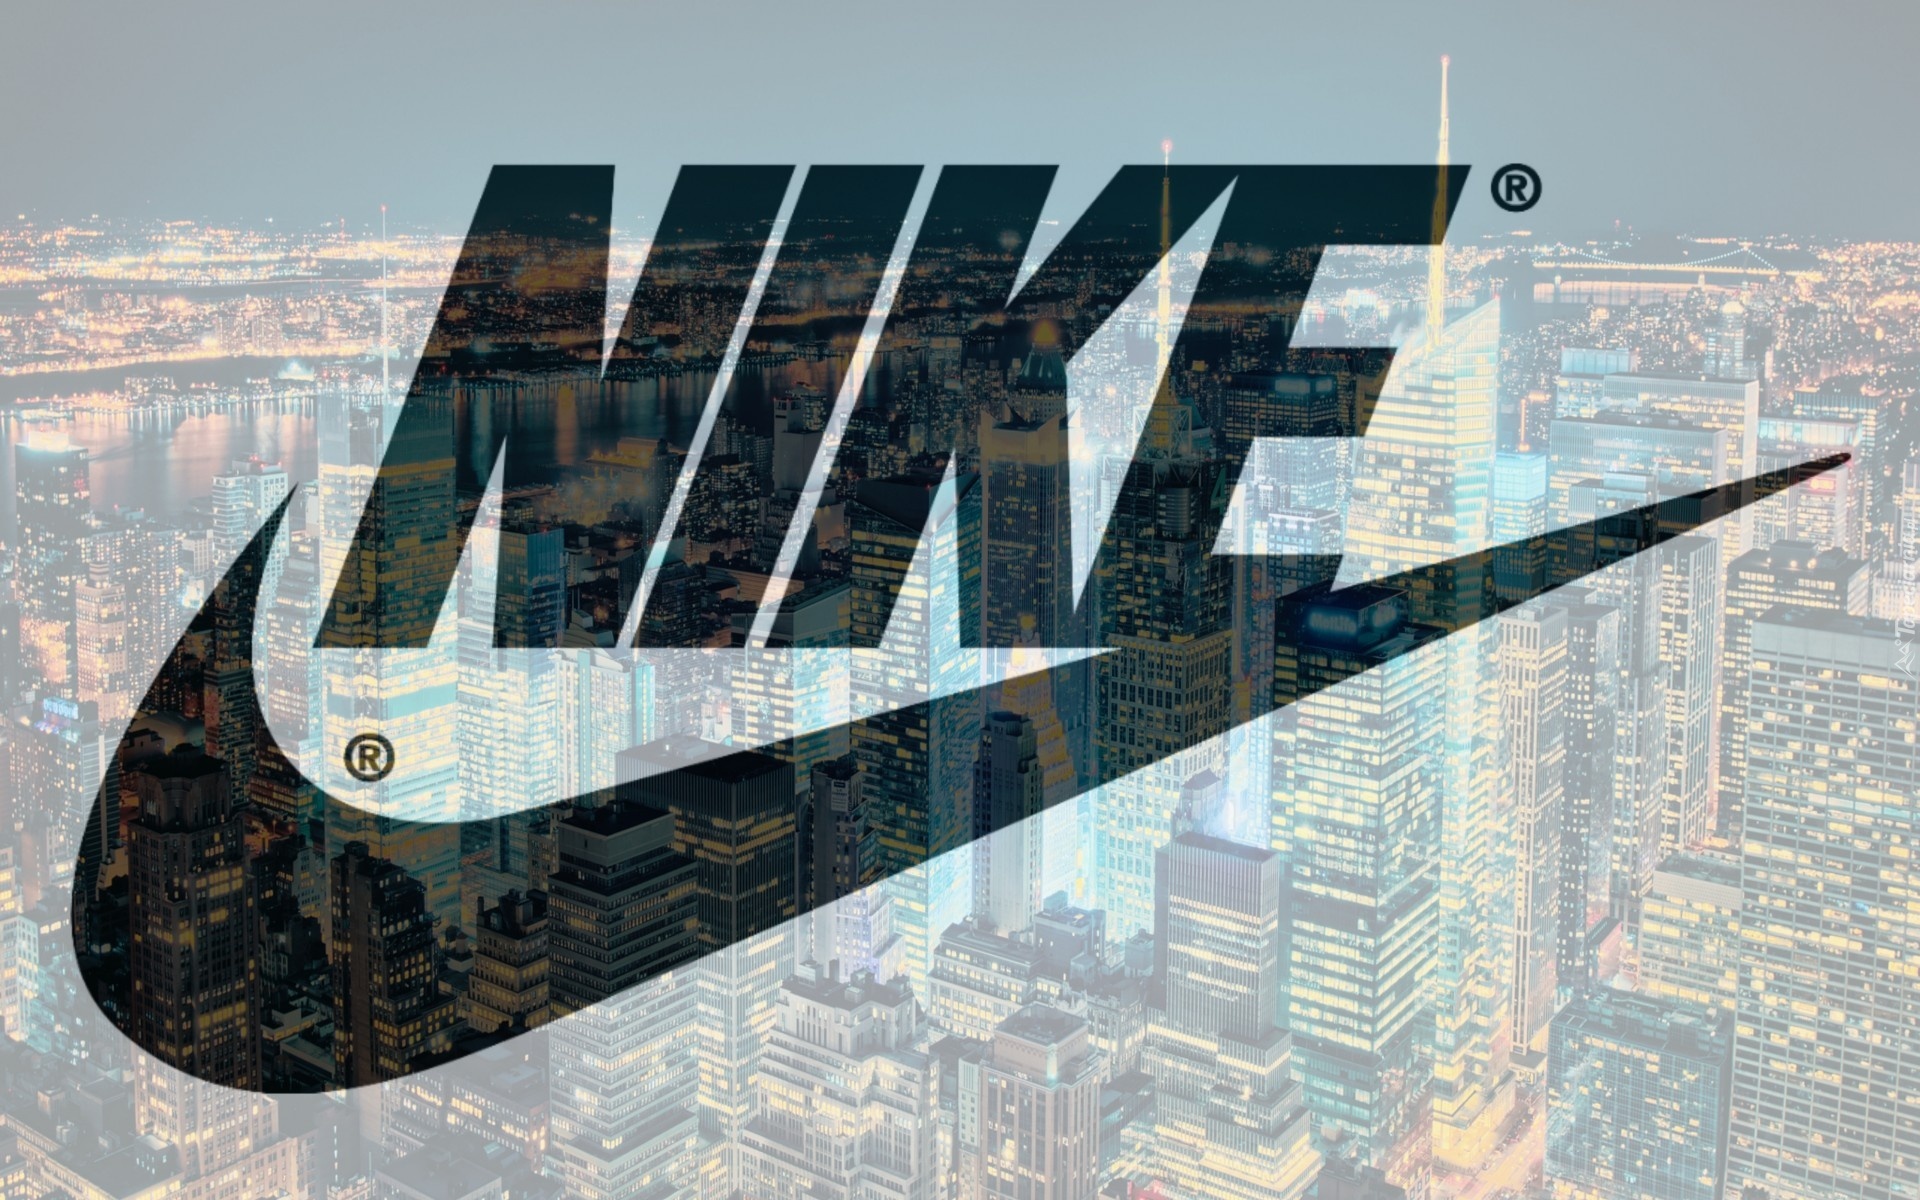 Nike, Zdjęcie, Miasta